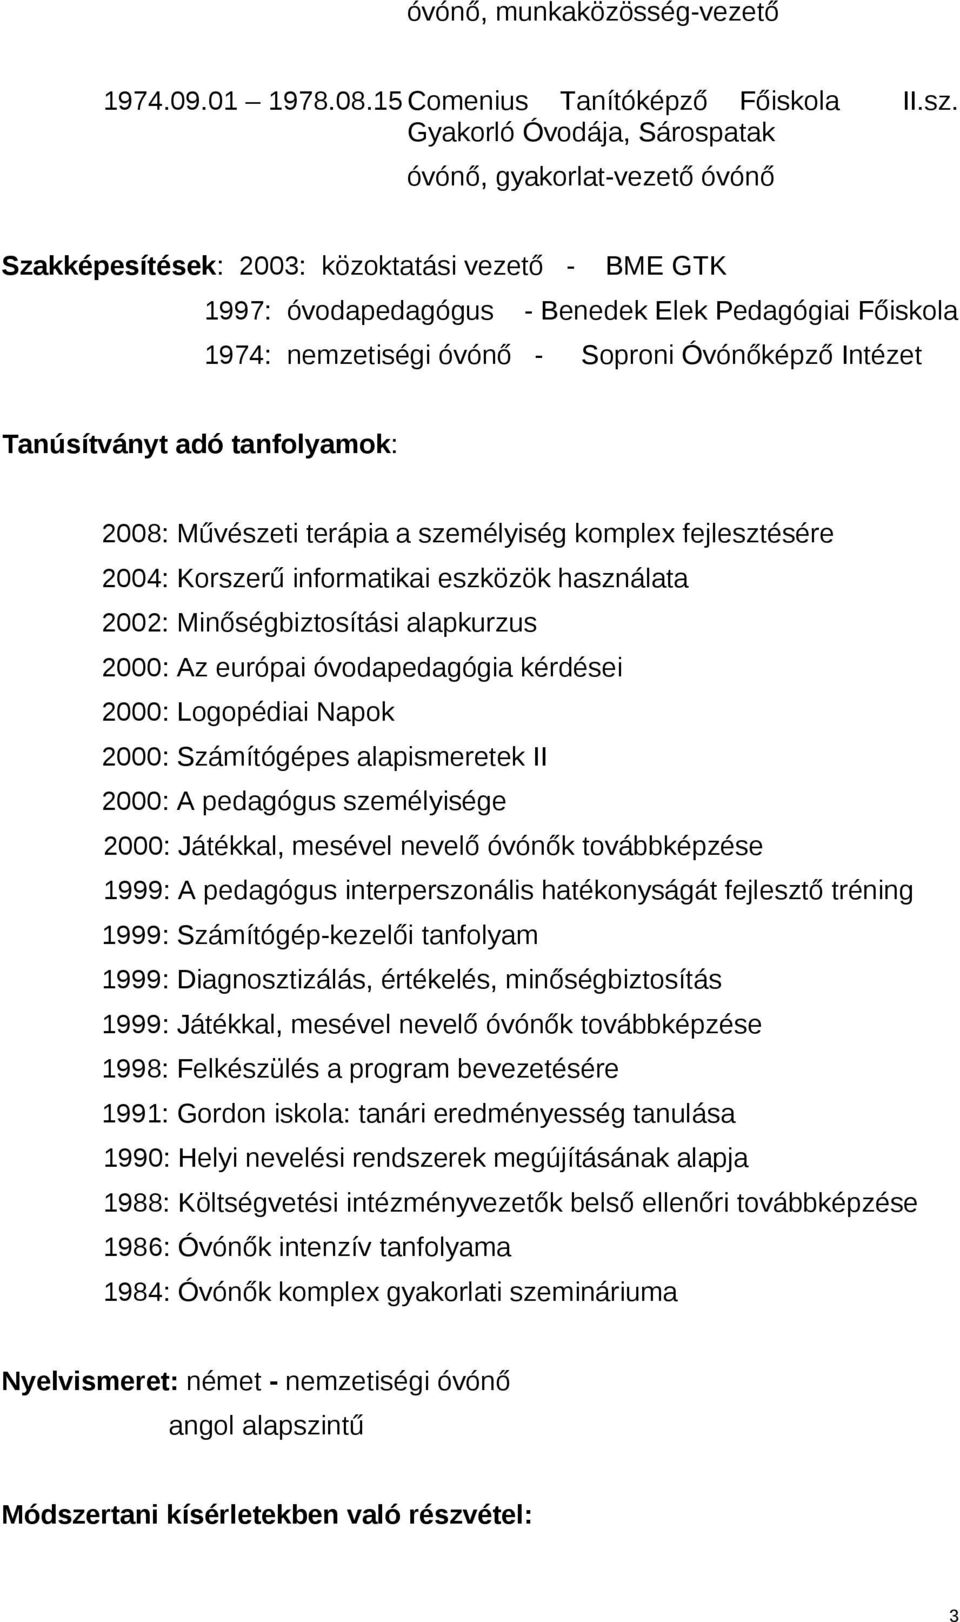 Soproni Óvónőképző Intézet Tanúsítványt adó tanfolyamok: 2008: Művészeti terápia a személyiség komplex fejlesztésére 2004: Korszerű informatikai eszközök használata 2002: Minőségbiztosítási